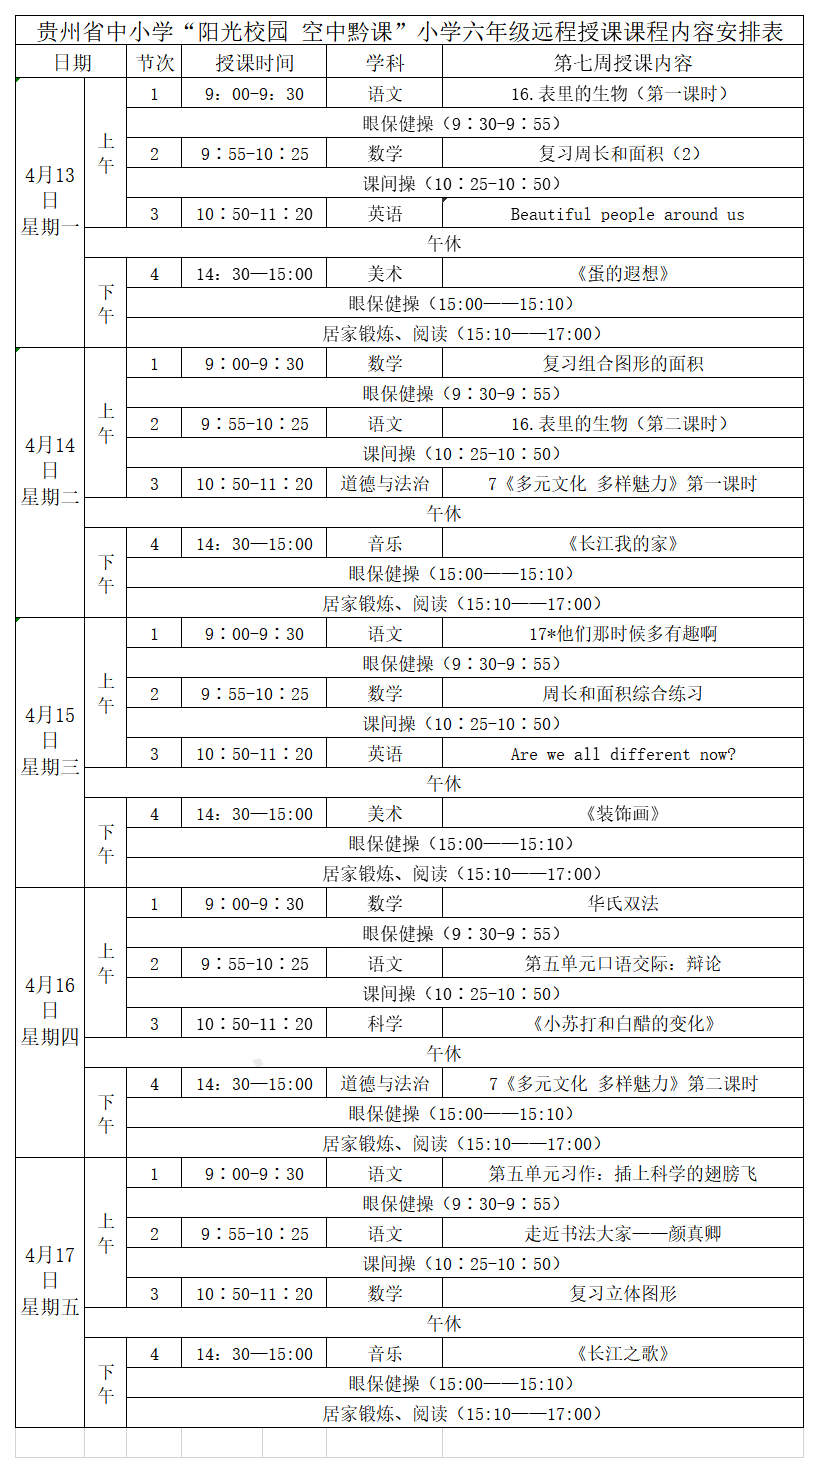 贵州中小学“空中课堂”课程表完整版公布（4月13日9